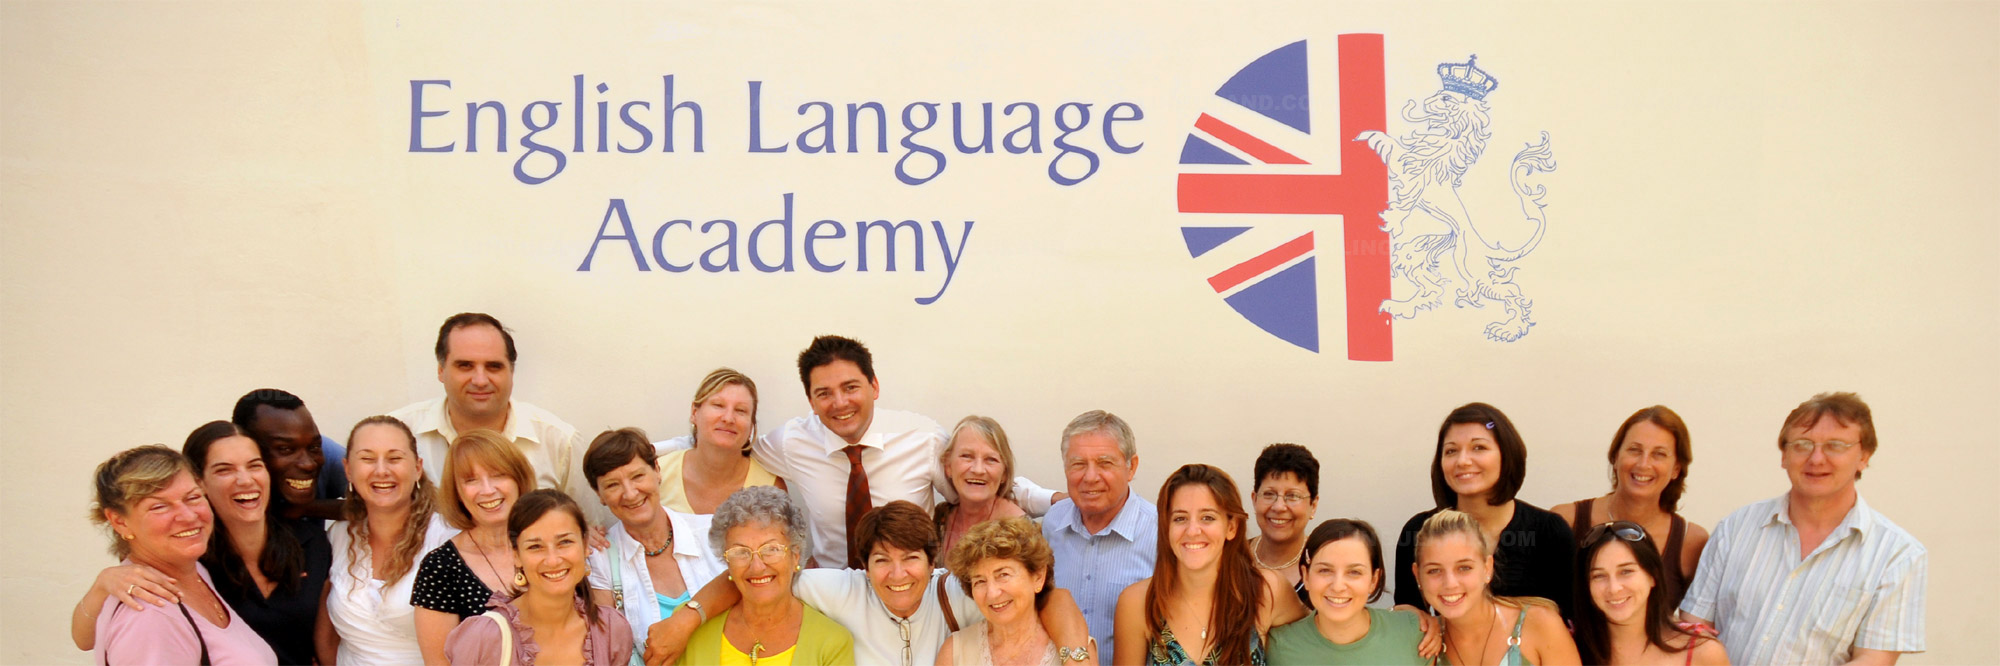 English Language Academy : récits et évaluations